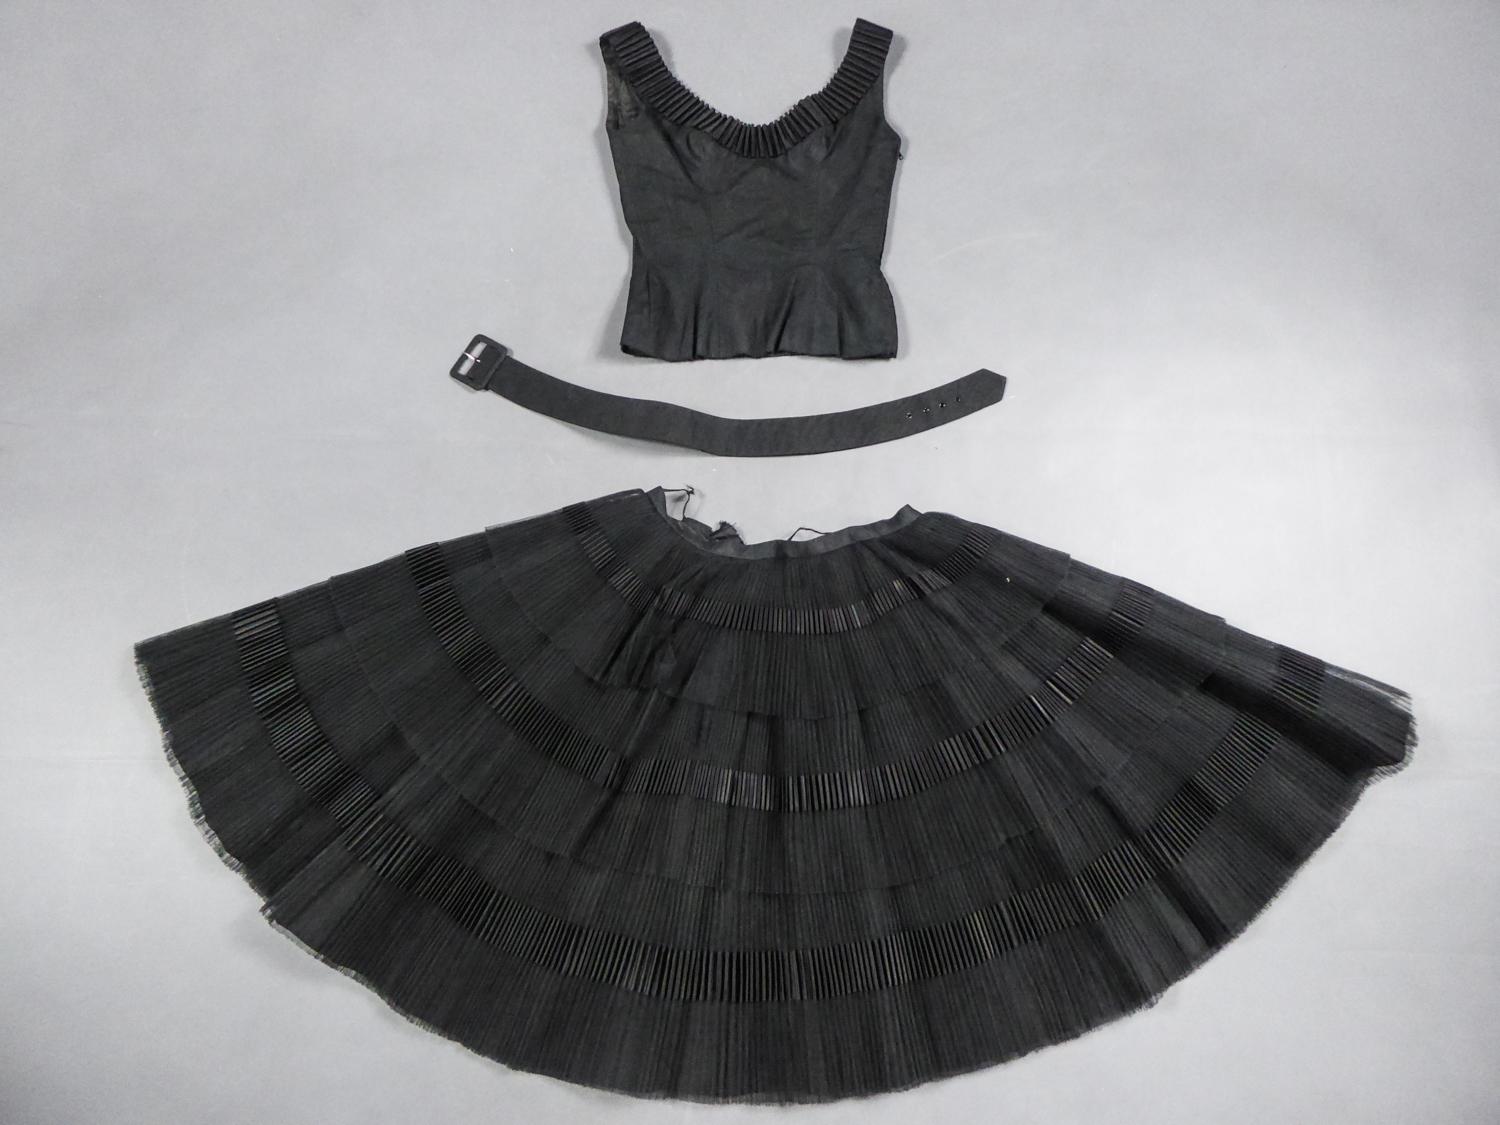 1958 dress